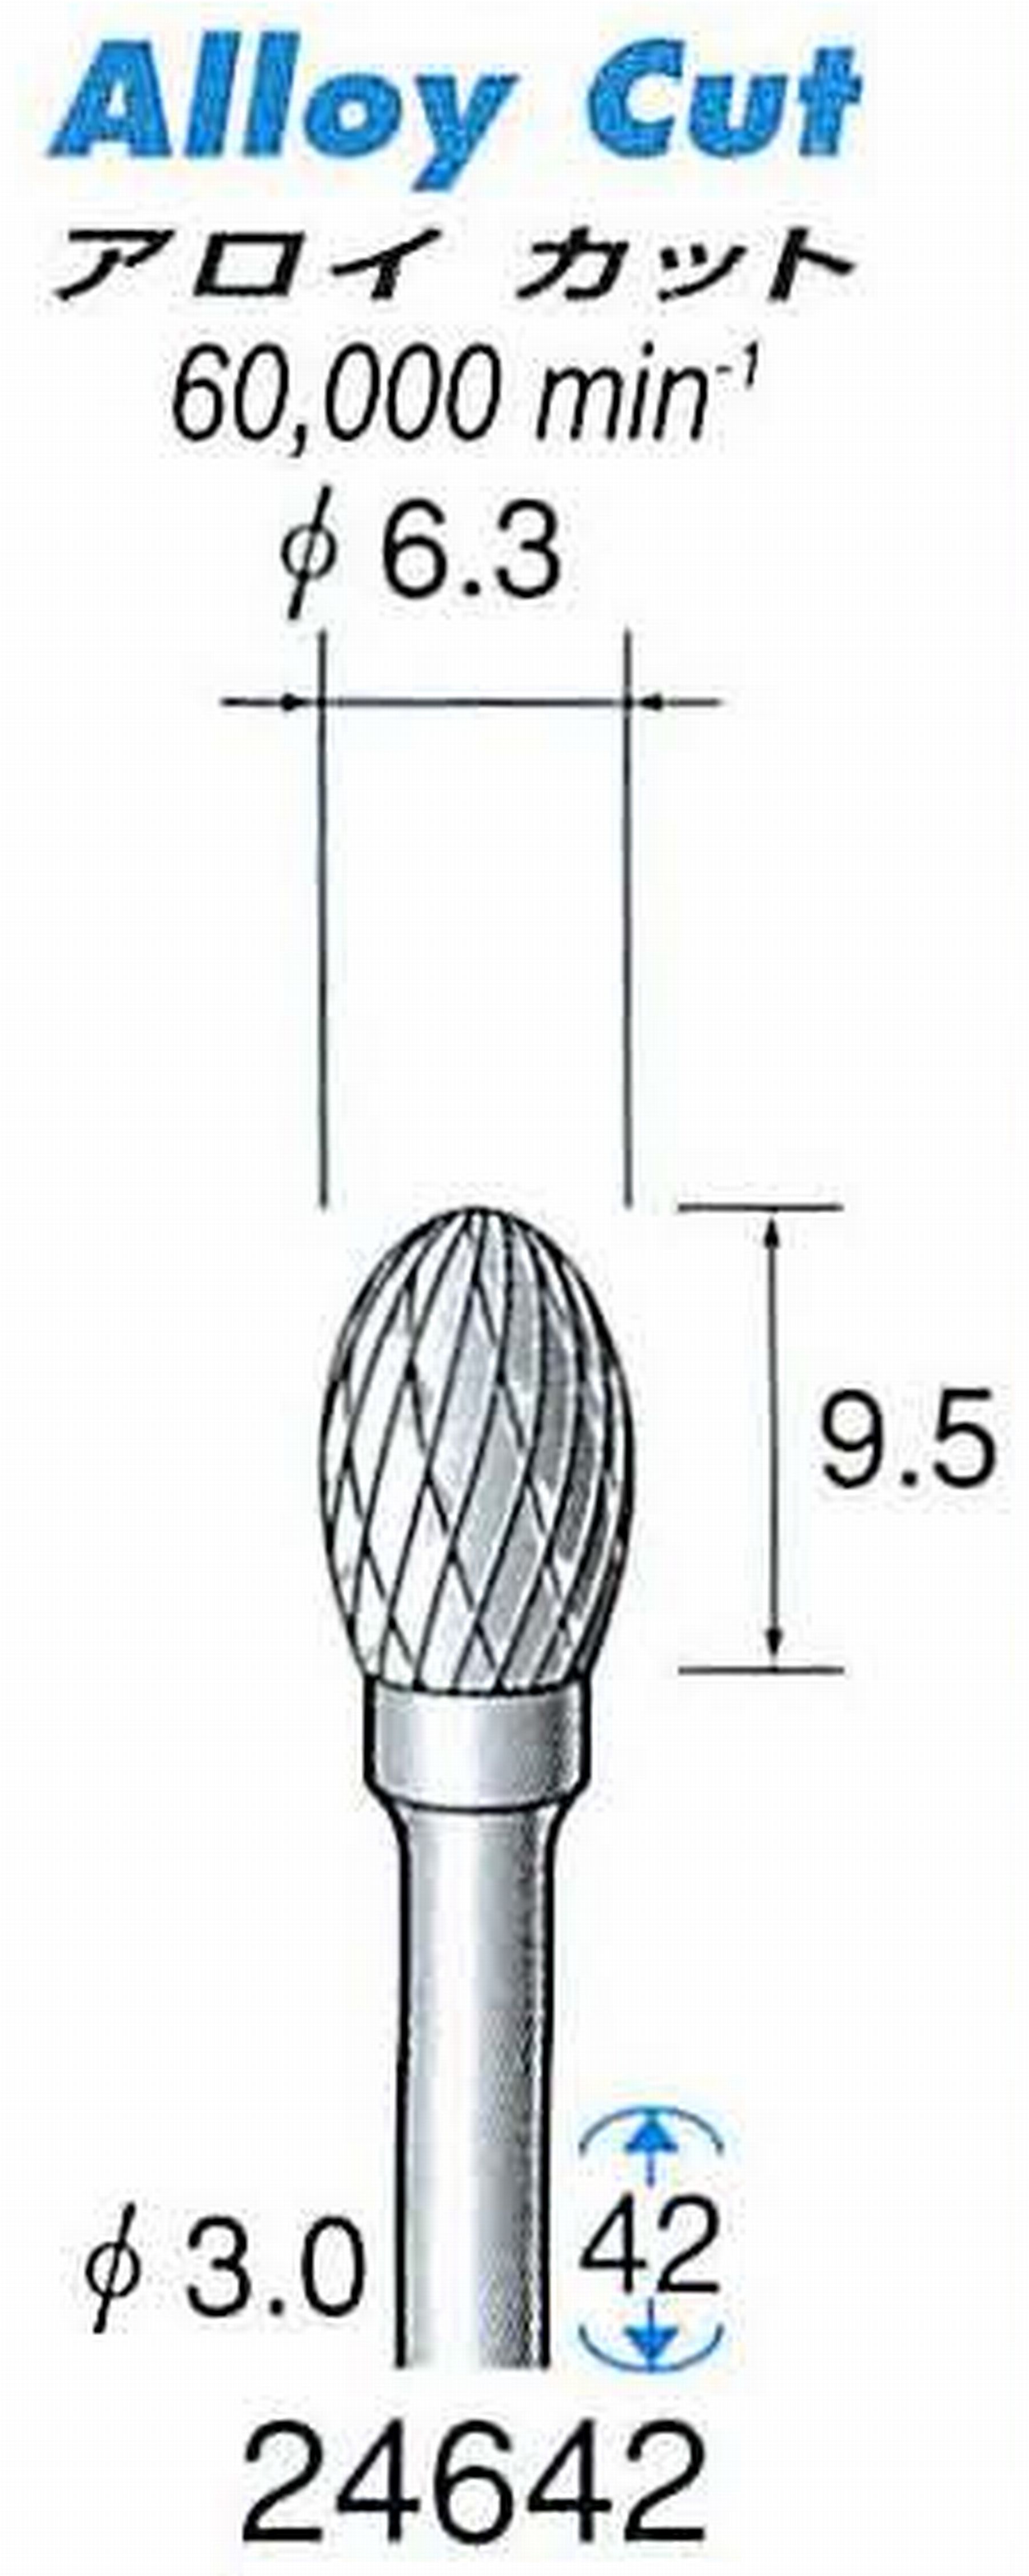 ナカニシ/NAKANISHI 超硬アロイカッター 軸径(シャンク)φ3.0mm 24642